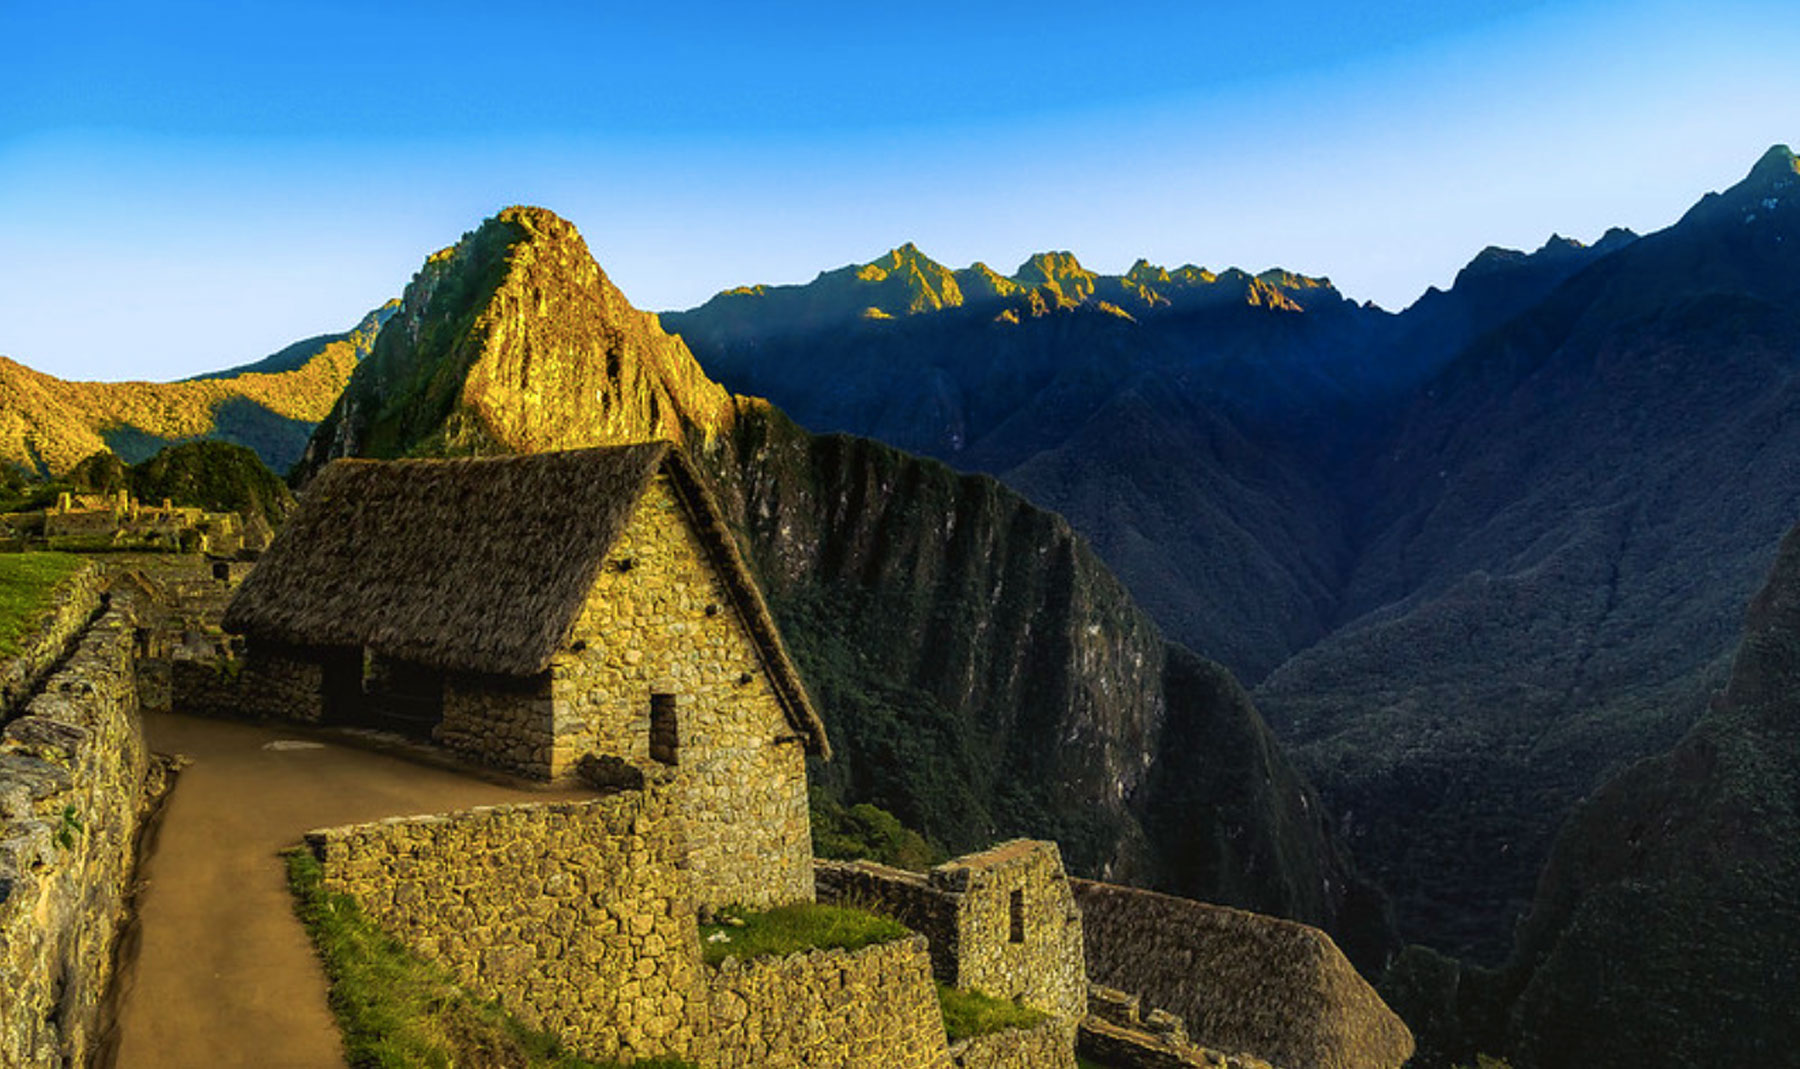 Machu Picchu at sunset